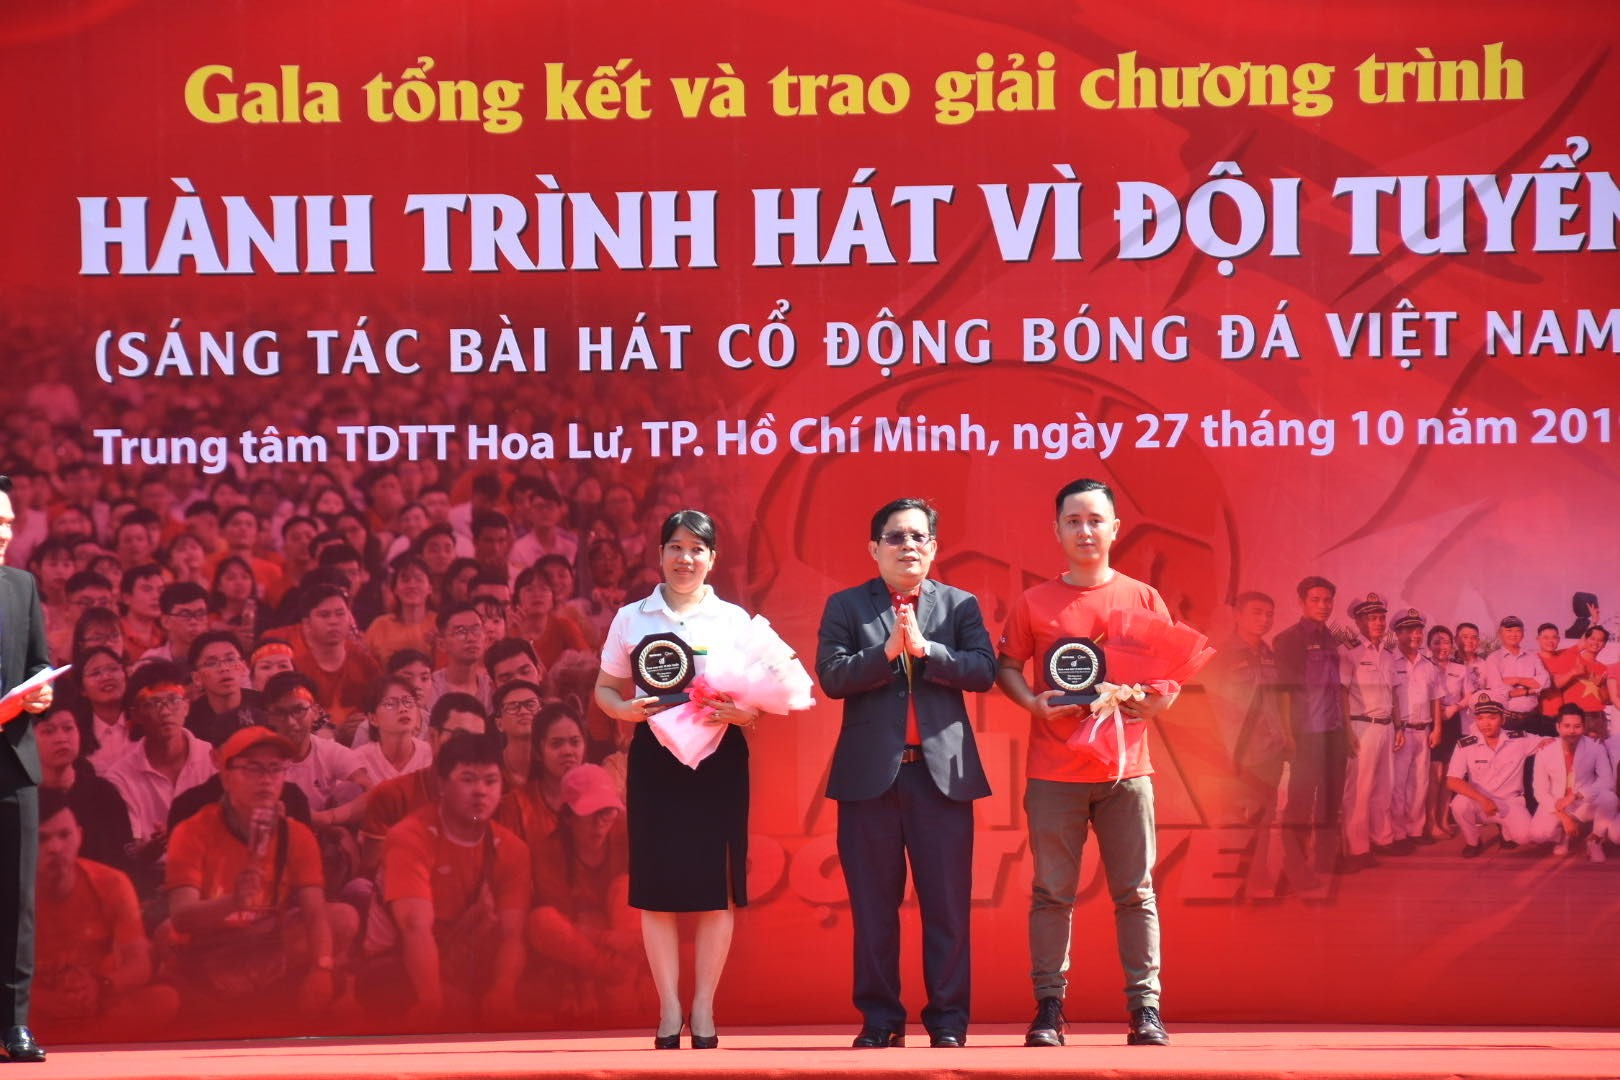 Hành trình hát vì đội tuyển: Ca khúc Khát khao Việt Nam giành giải nhất - Ảnh 8.